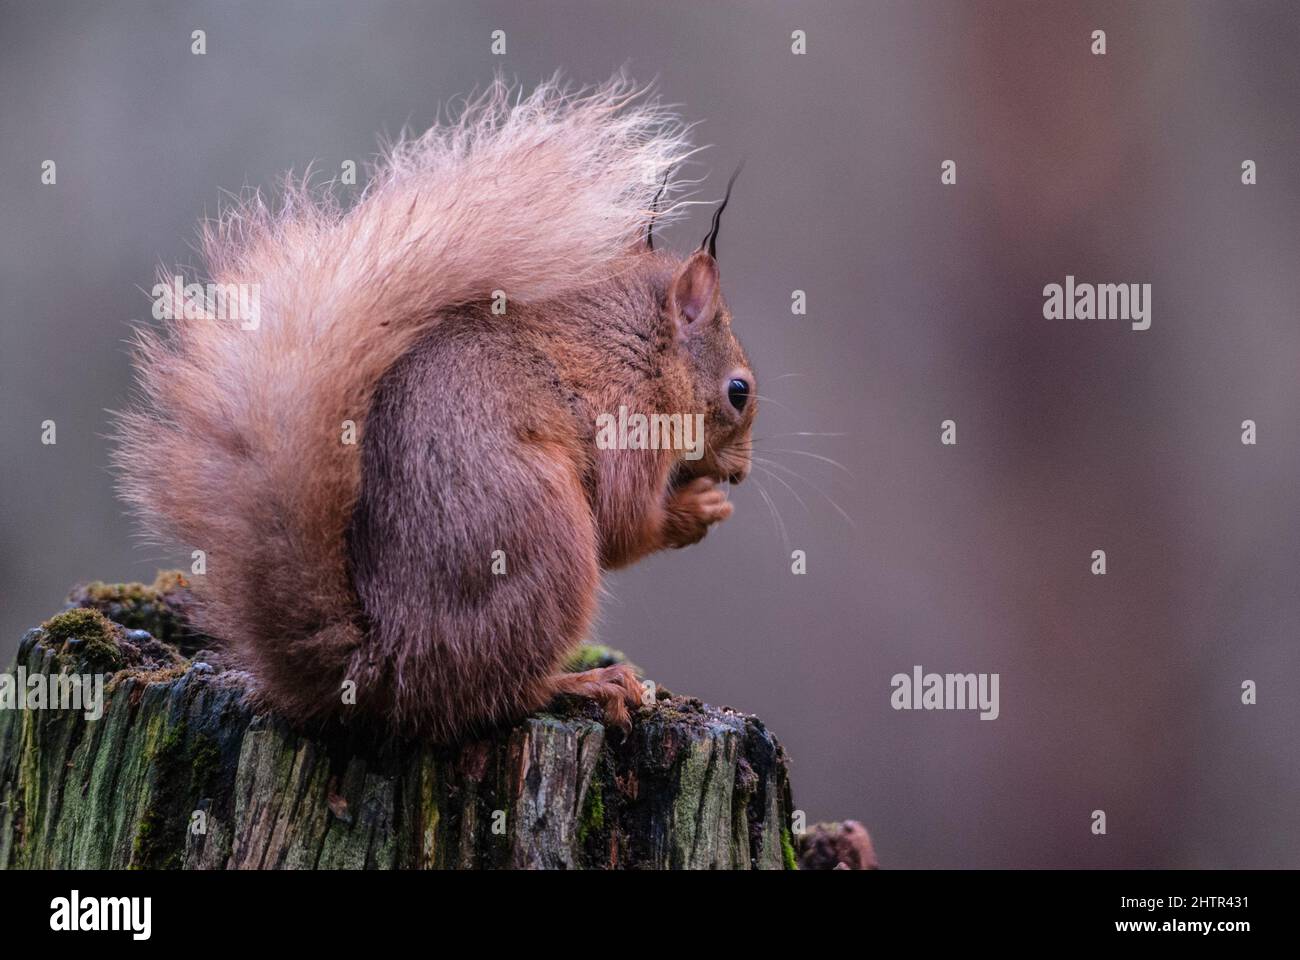 Red Squirrel (Sciurus vulgaris), on old pine stump Stock Photo